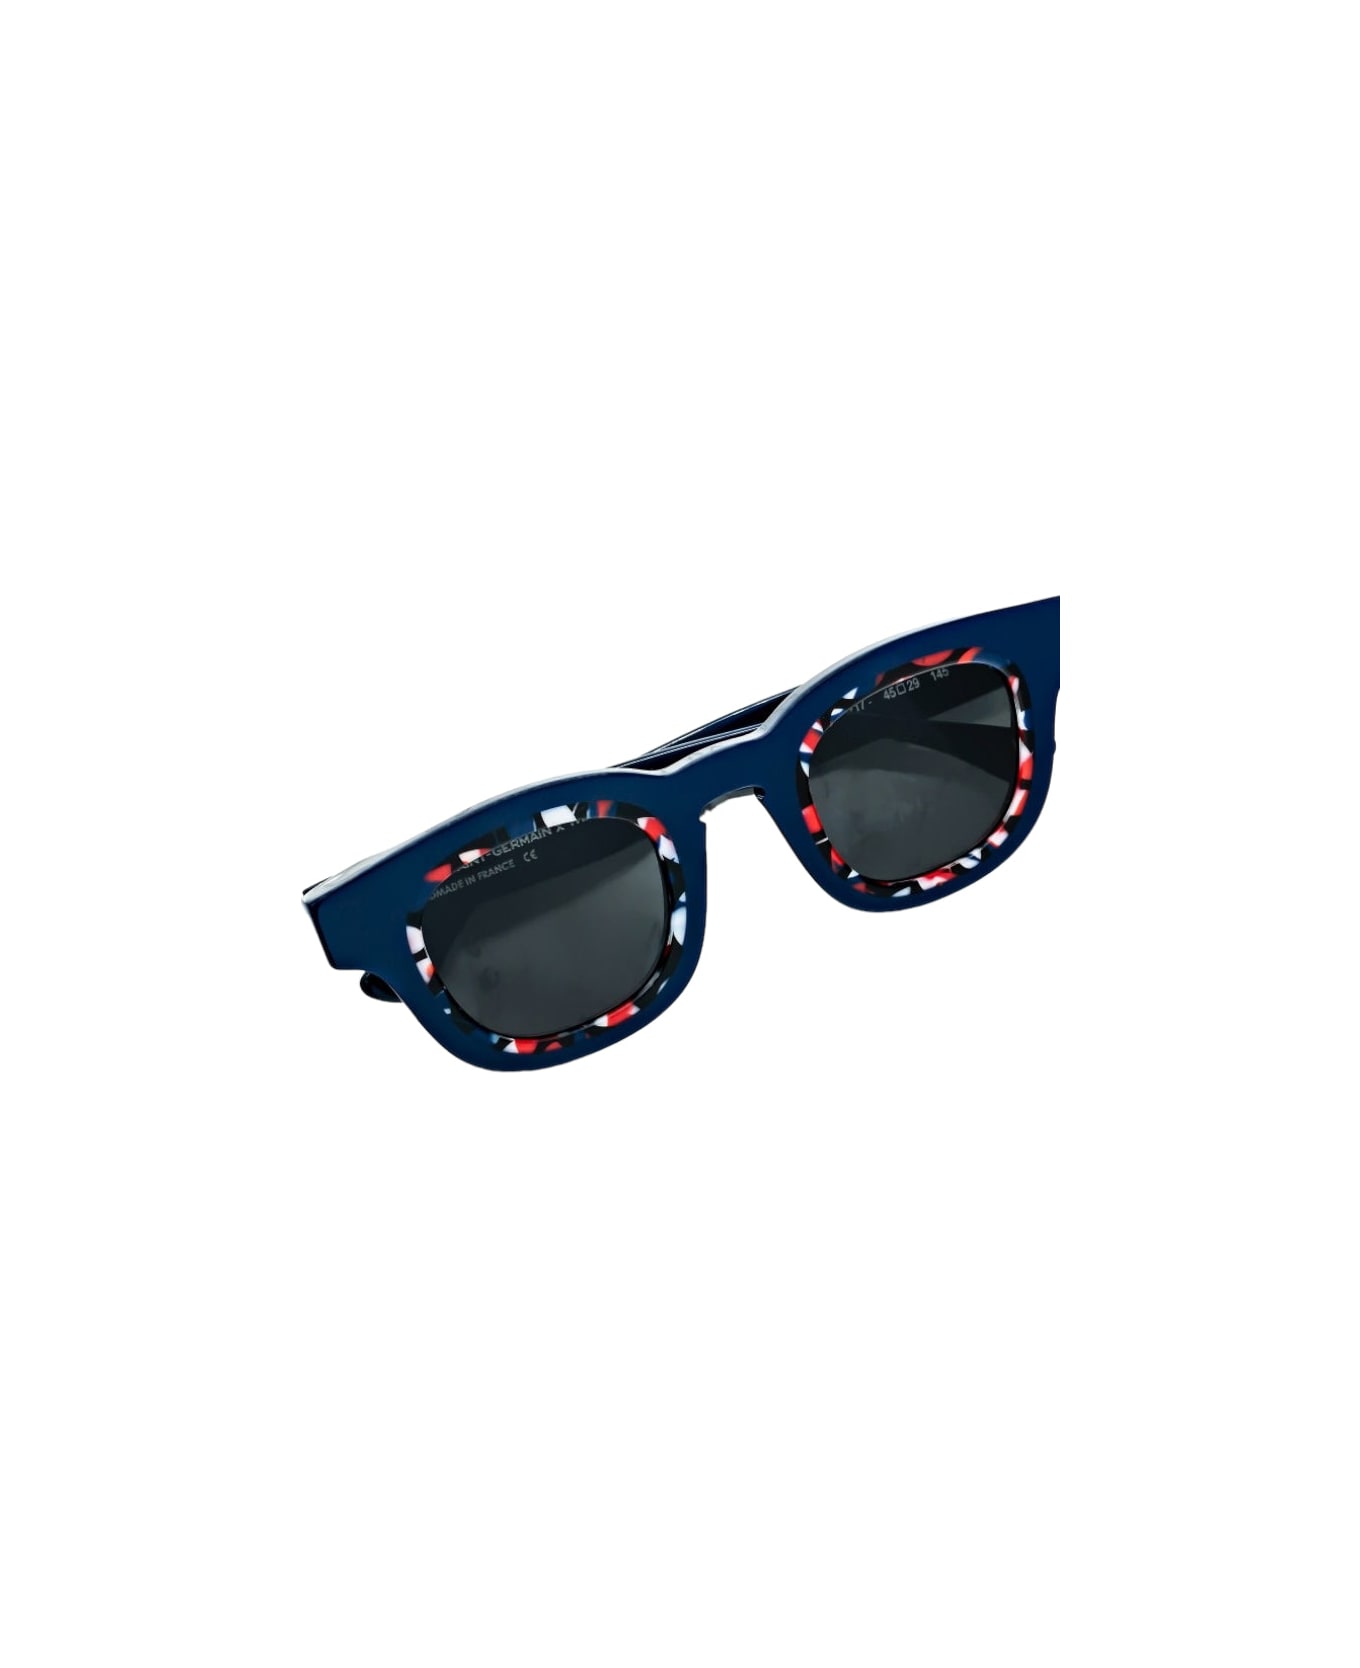 Thierry Lasry X Paris Saint Germain - Blue Sunglasses